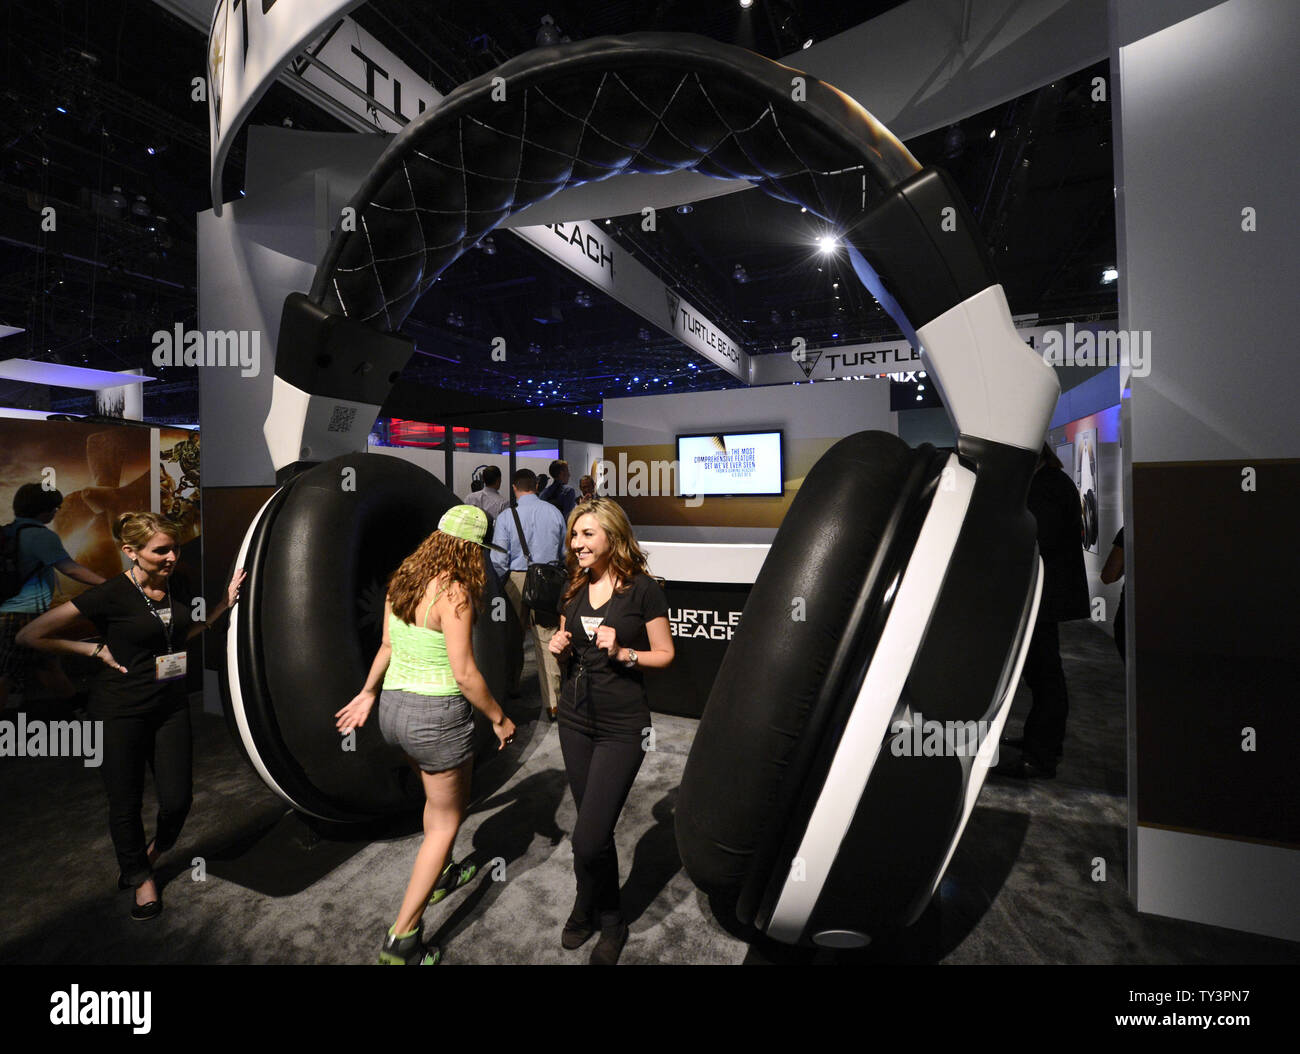 Los asistentes entren a través de auriculares gigantes en el Turtle Beach  mostrar durante el E3, Electronic Entertainment Expo celebrada en el LA  Convention Center de Los Angeles el 11 de junio